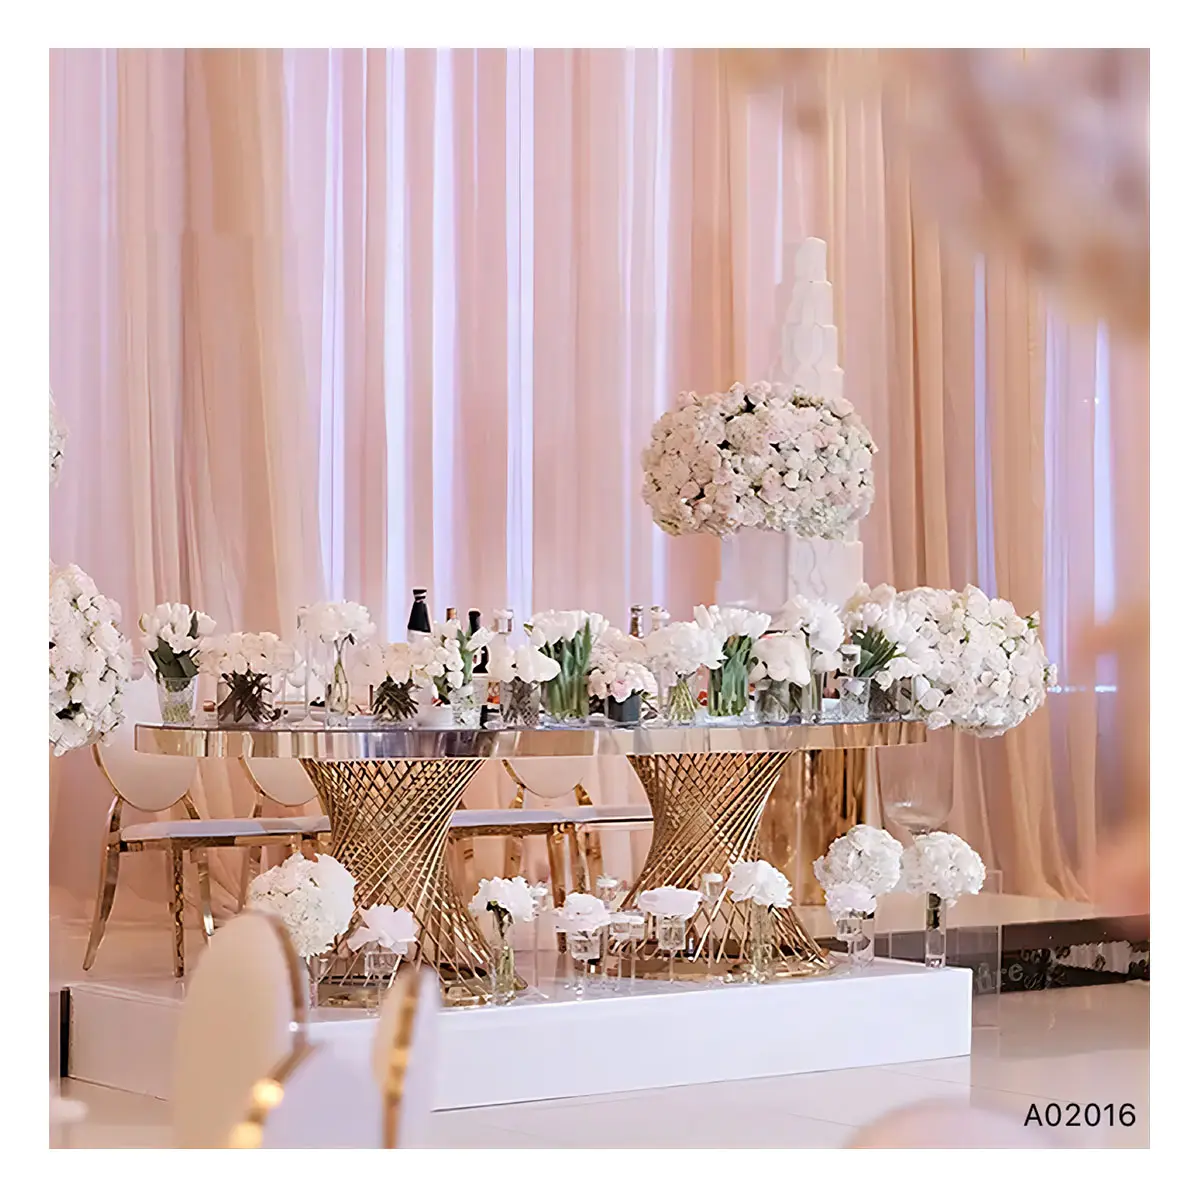 Moderno di alta qualità MDF ovali tavoli da pranzo con acciaio inox oro specchio di vetro Hotel banchetti di nozze feste all'aperto eventi